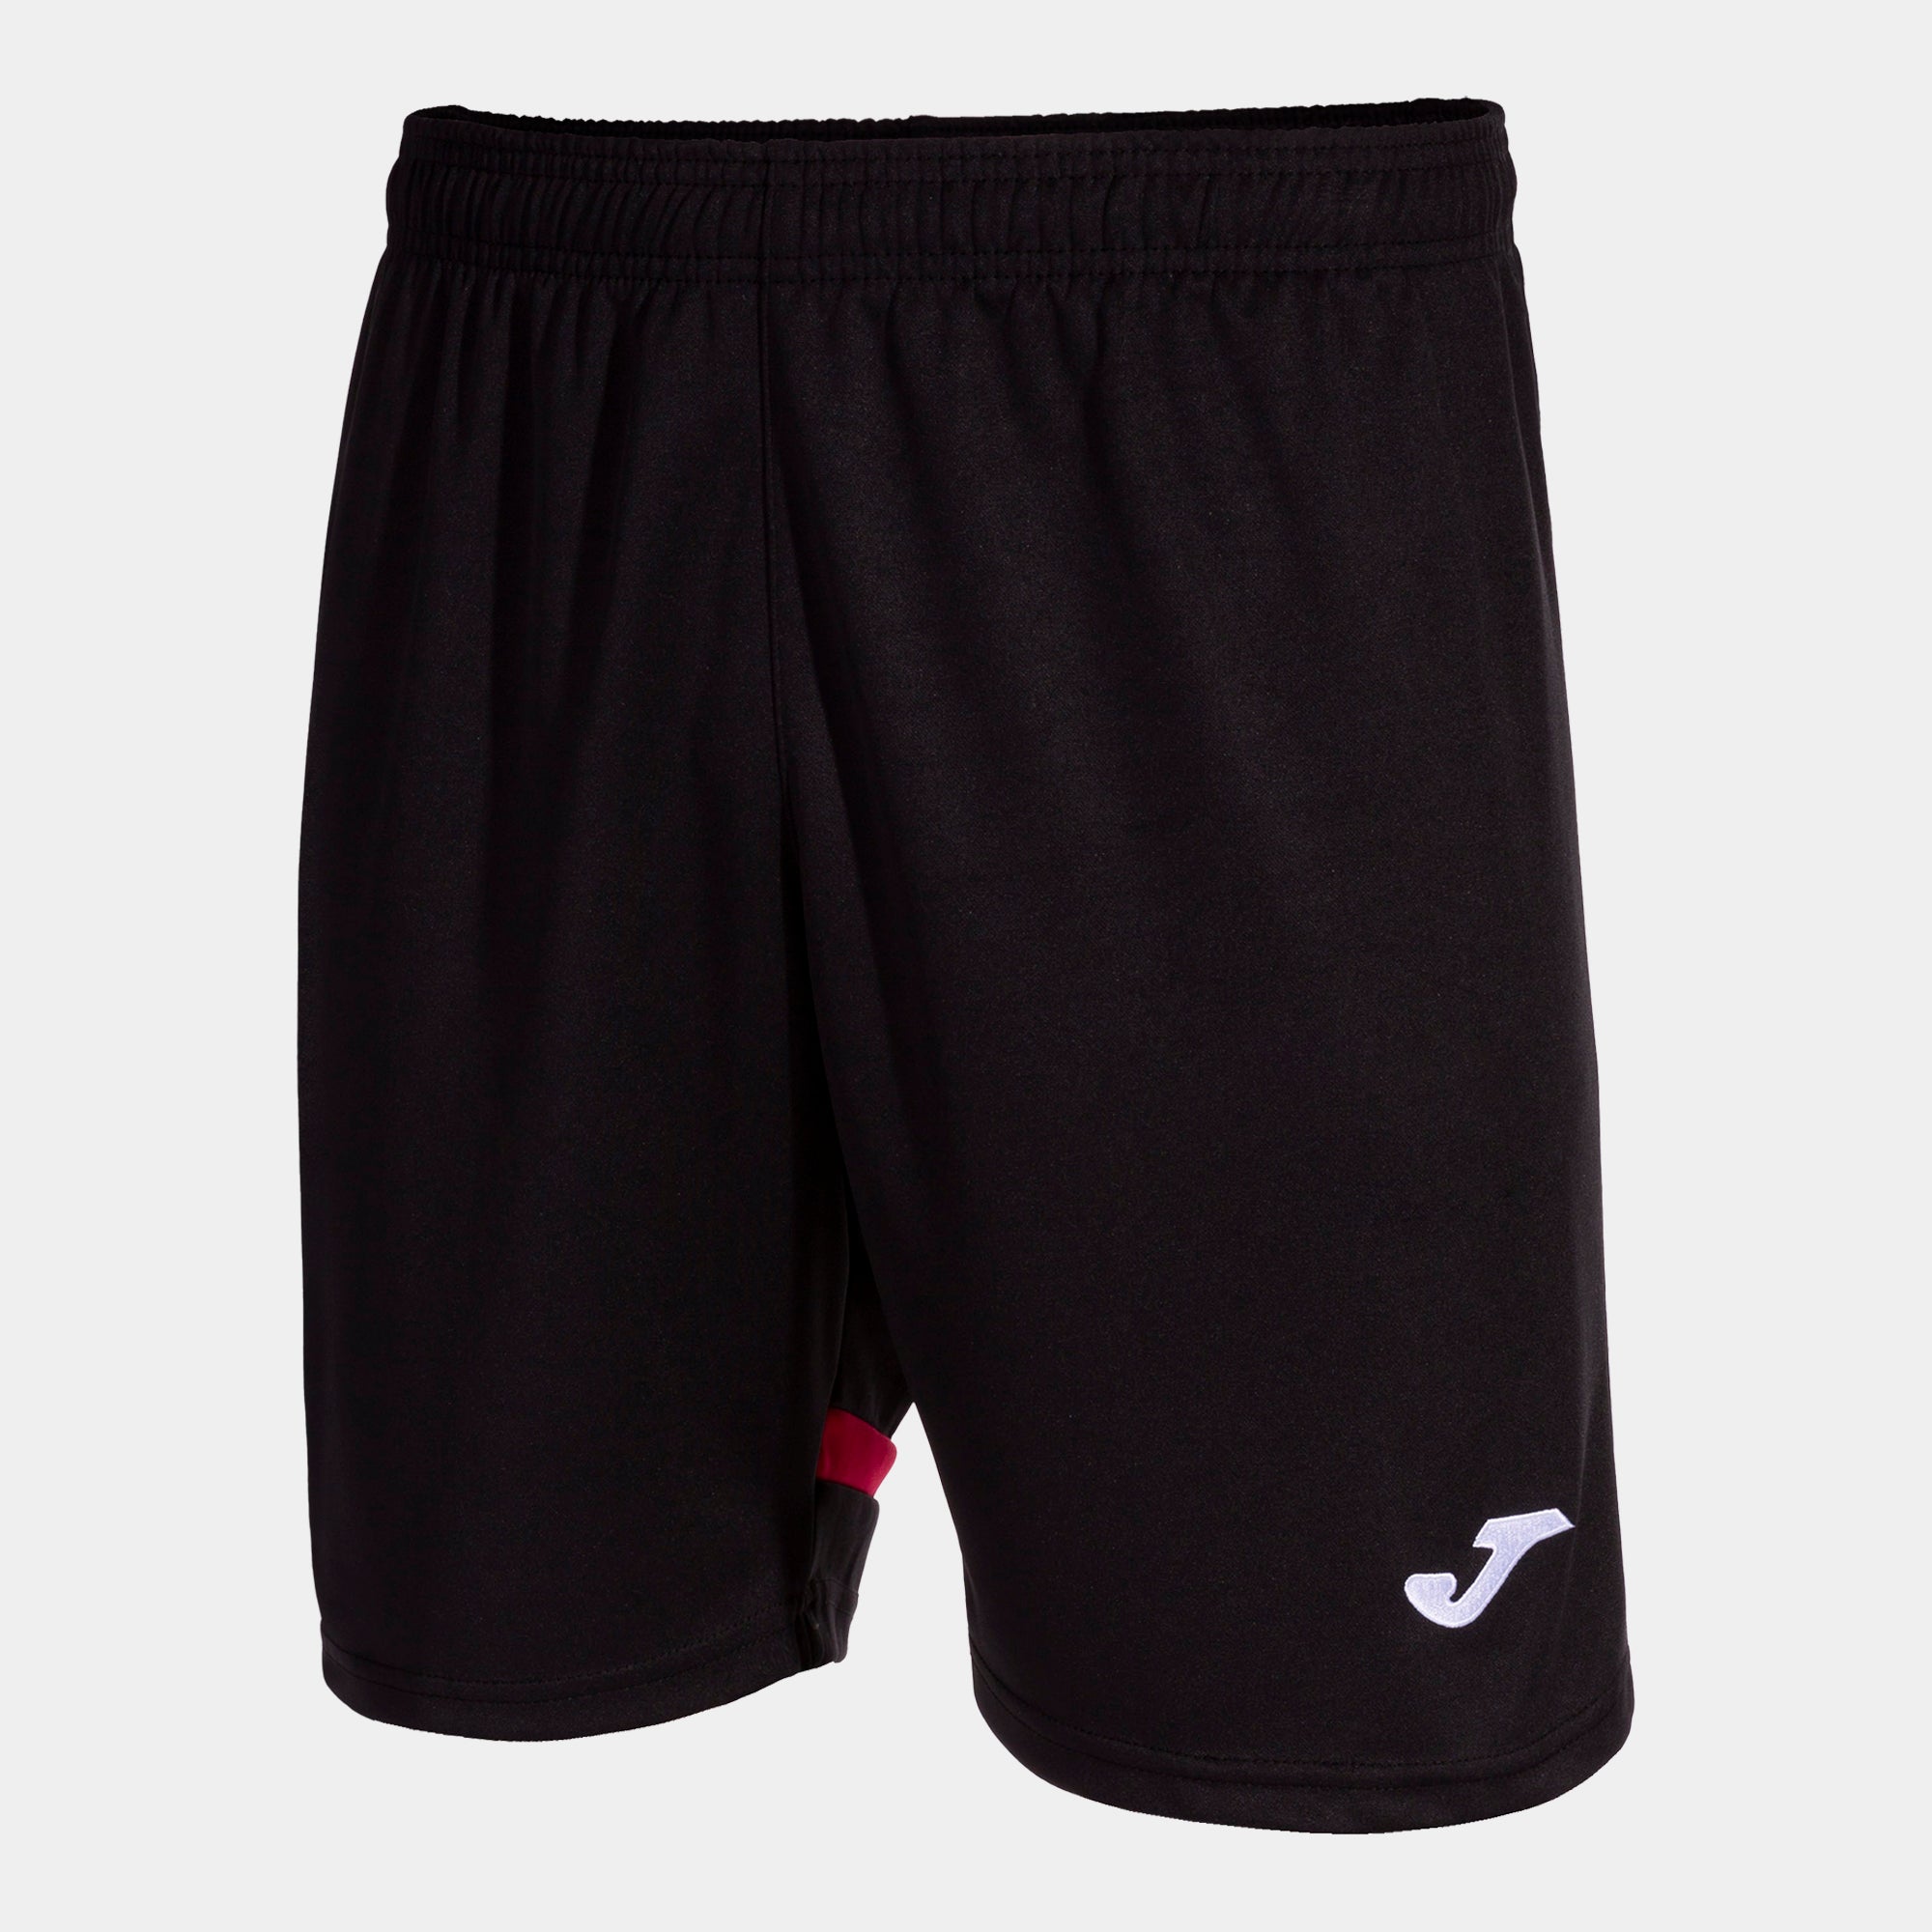 Joma Tokio Shorts - Black/Red